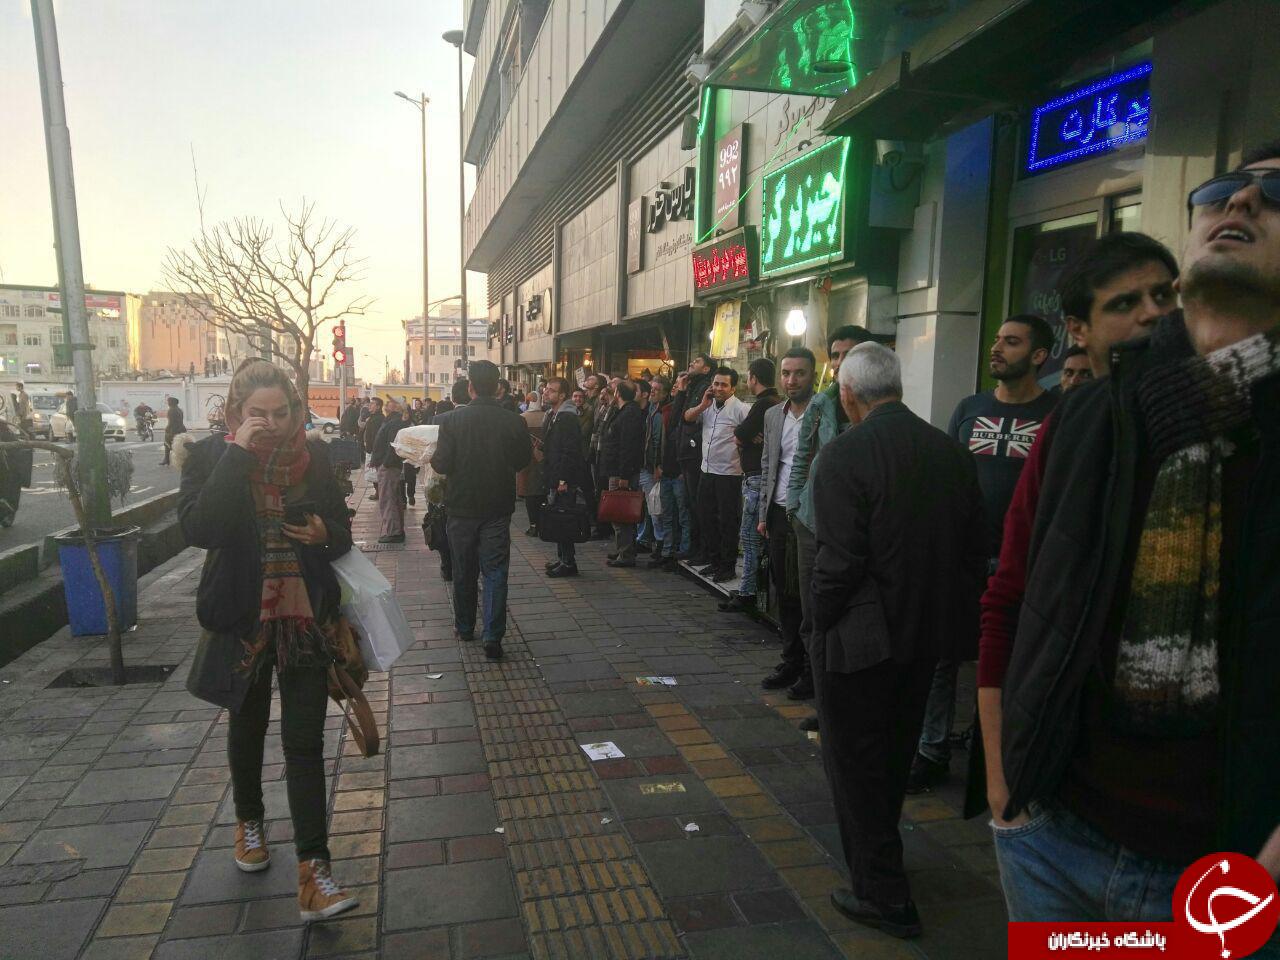 واکنش جالب مردم به شلیک پدافند هوایی در تهران + تصاویر